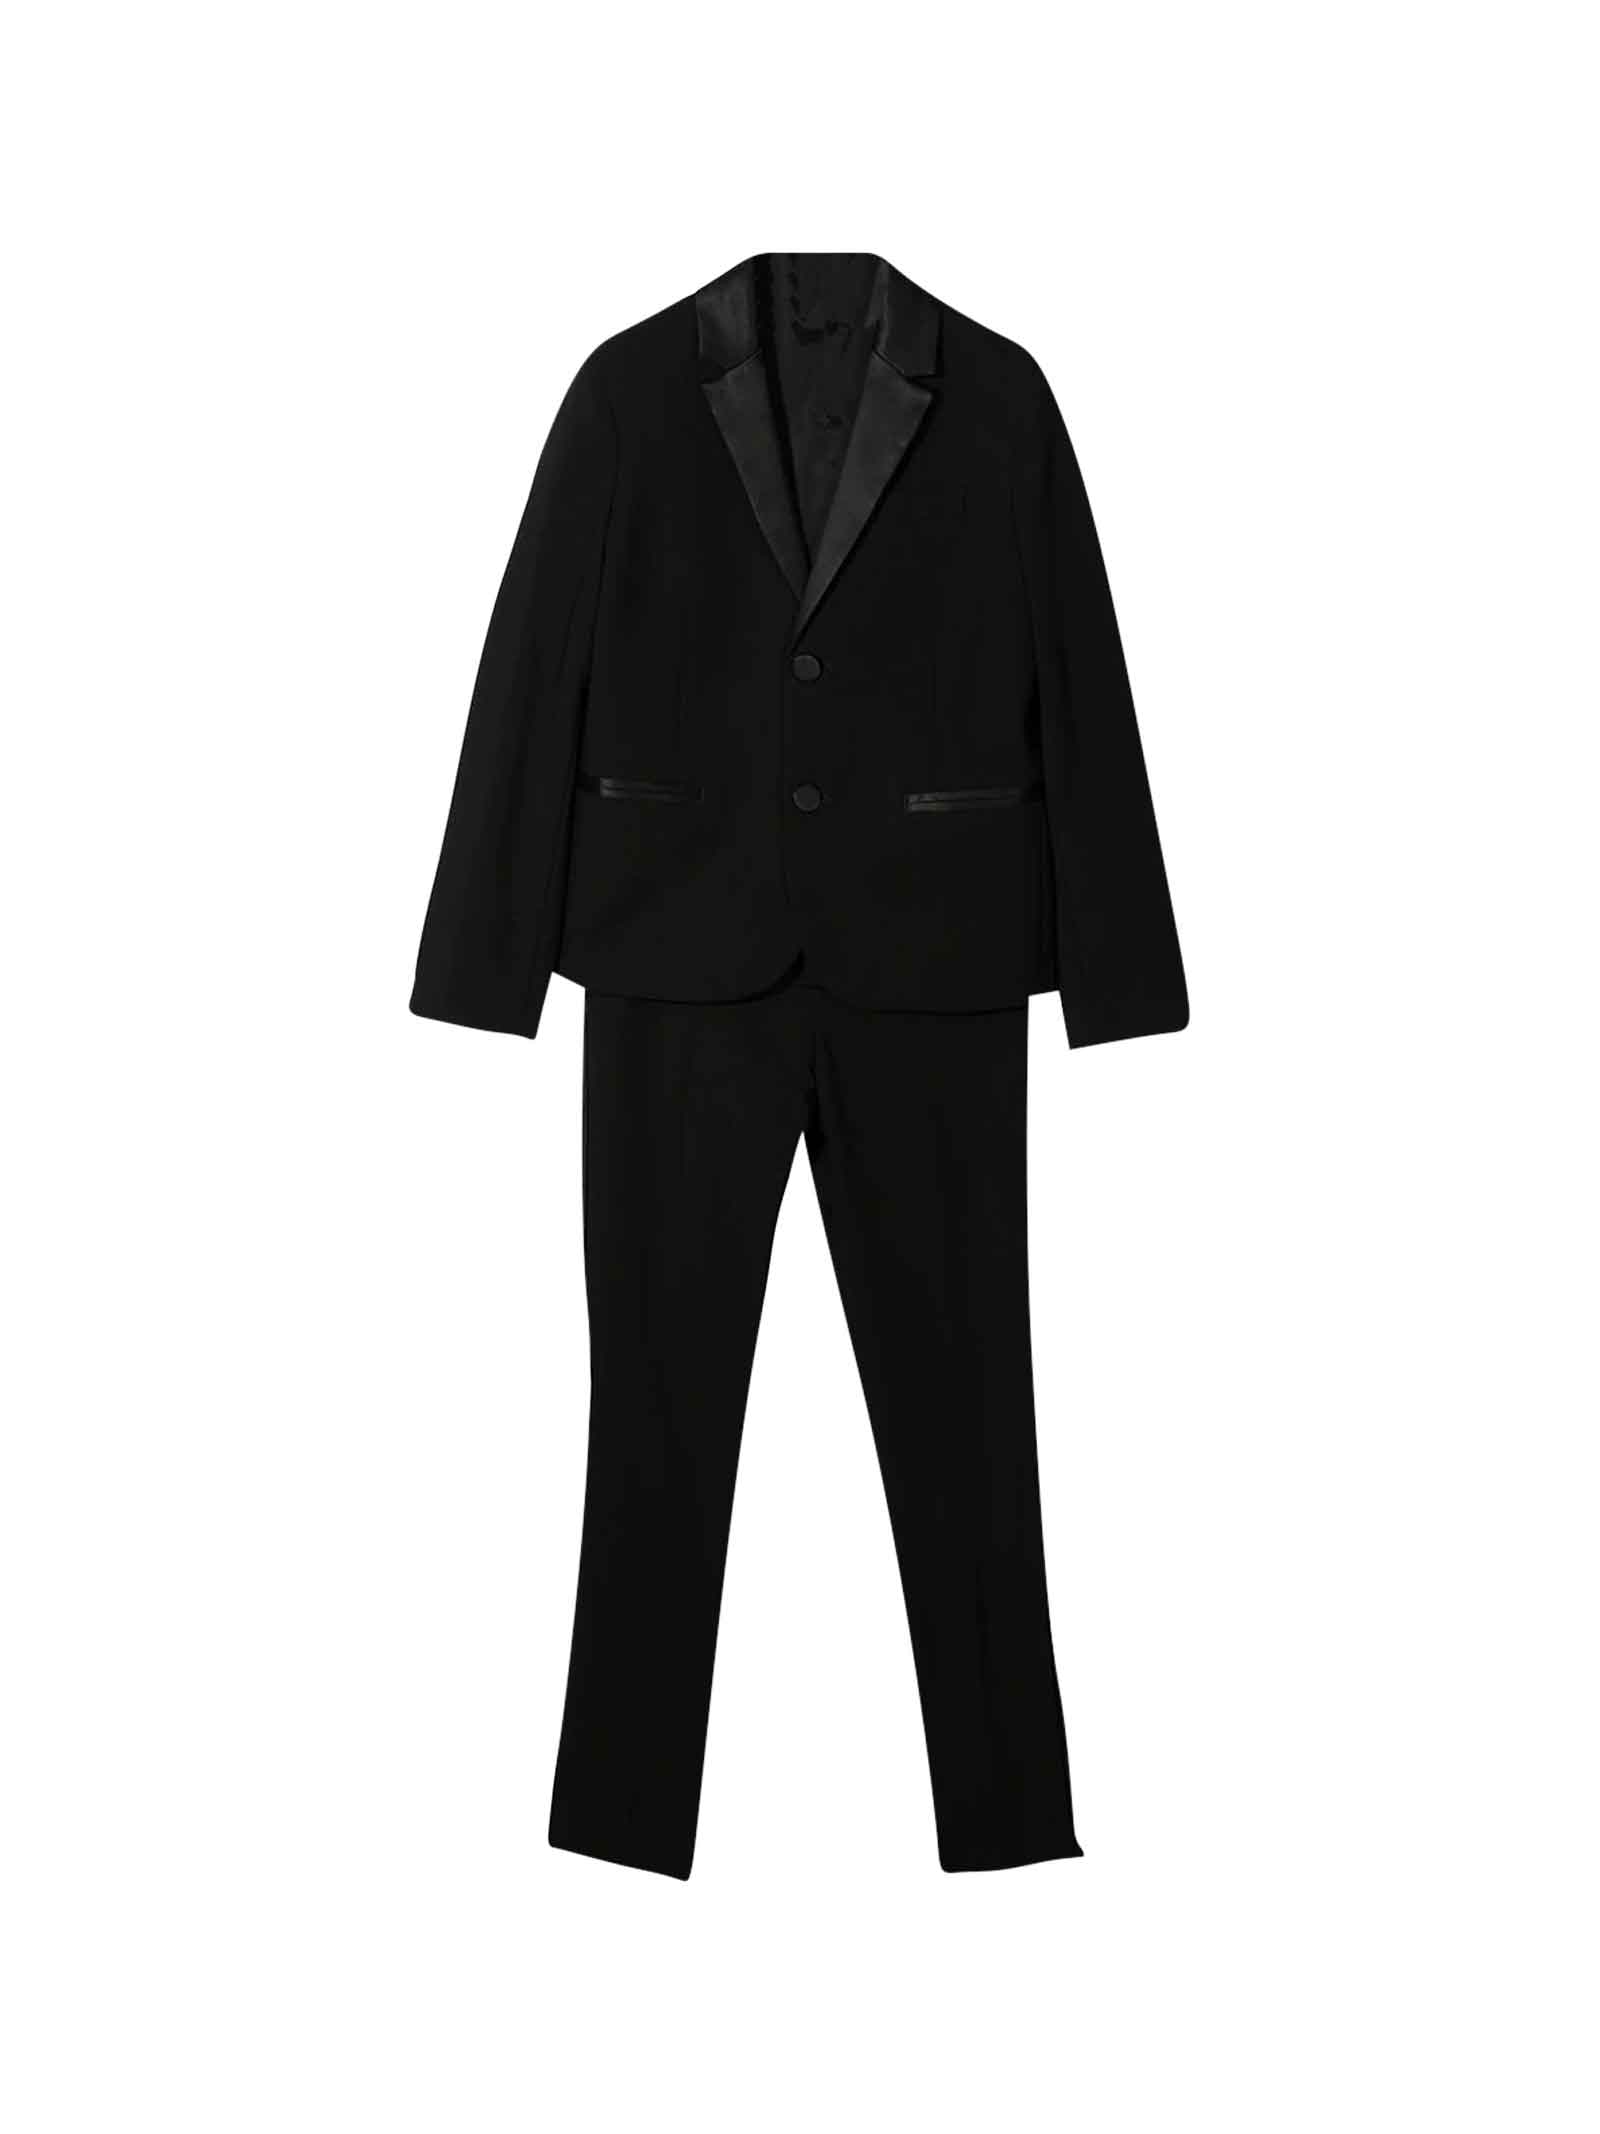 Emporio Armani Black Suit Teen Boy